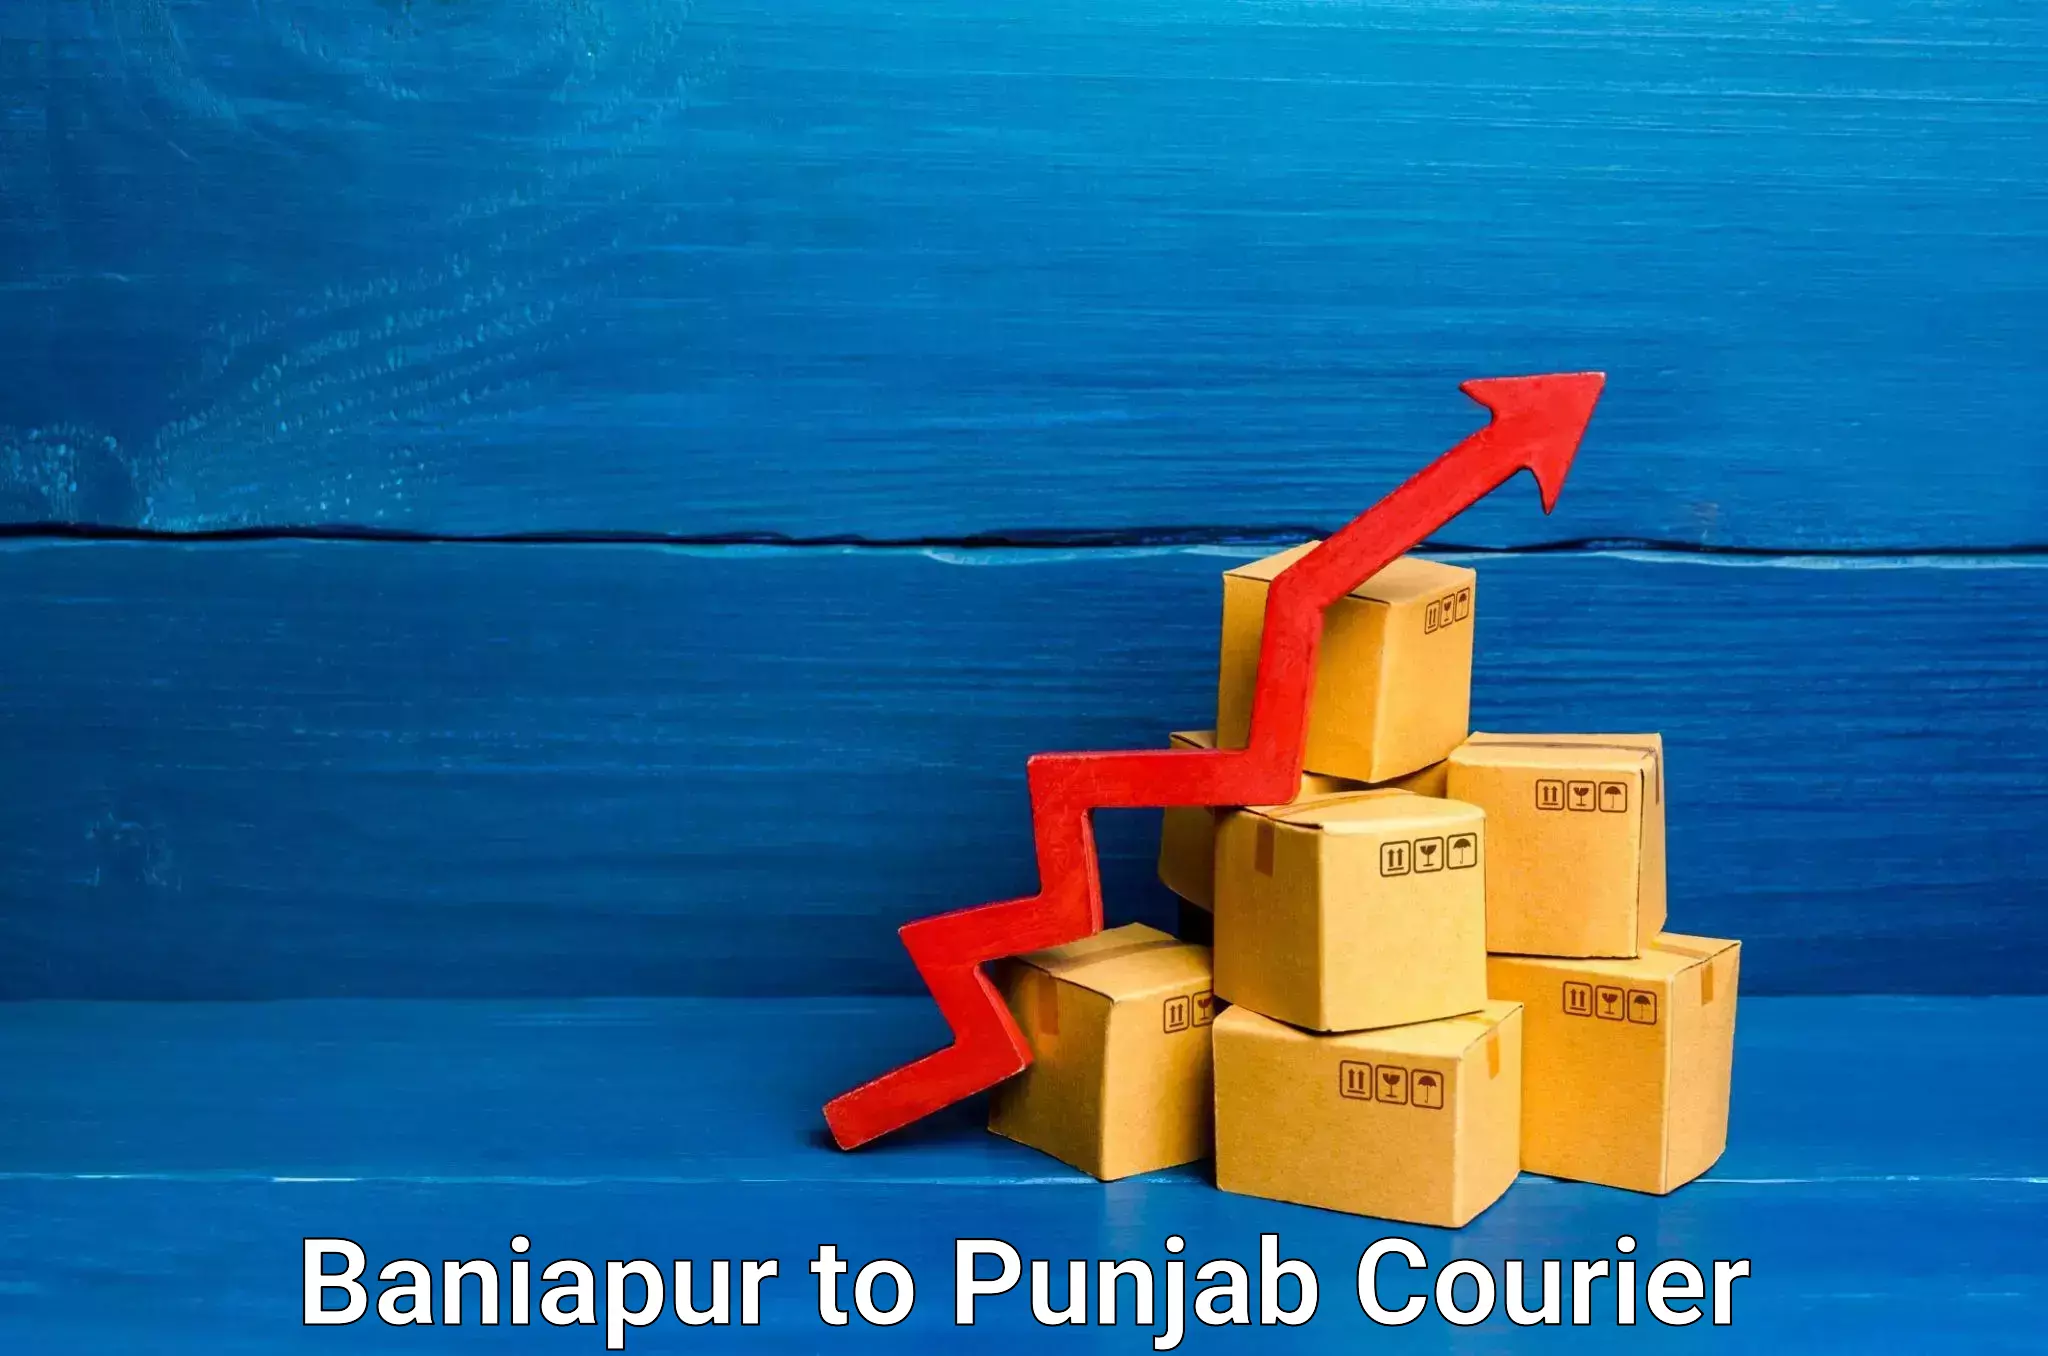 Reliable furniture transport in Baniapur to Punjab